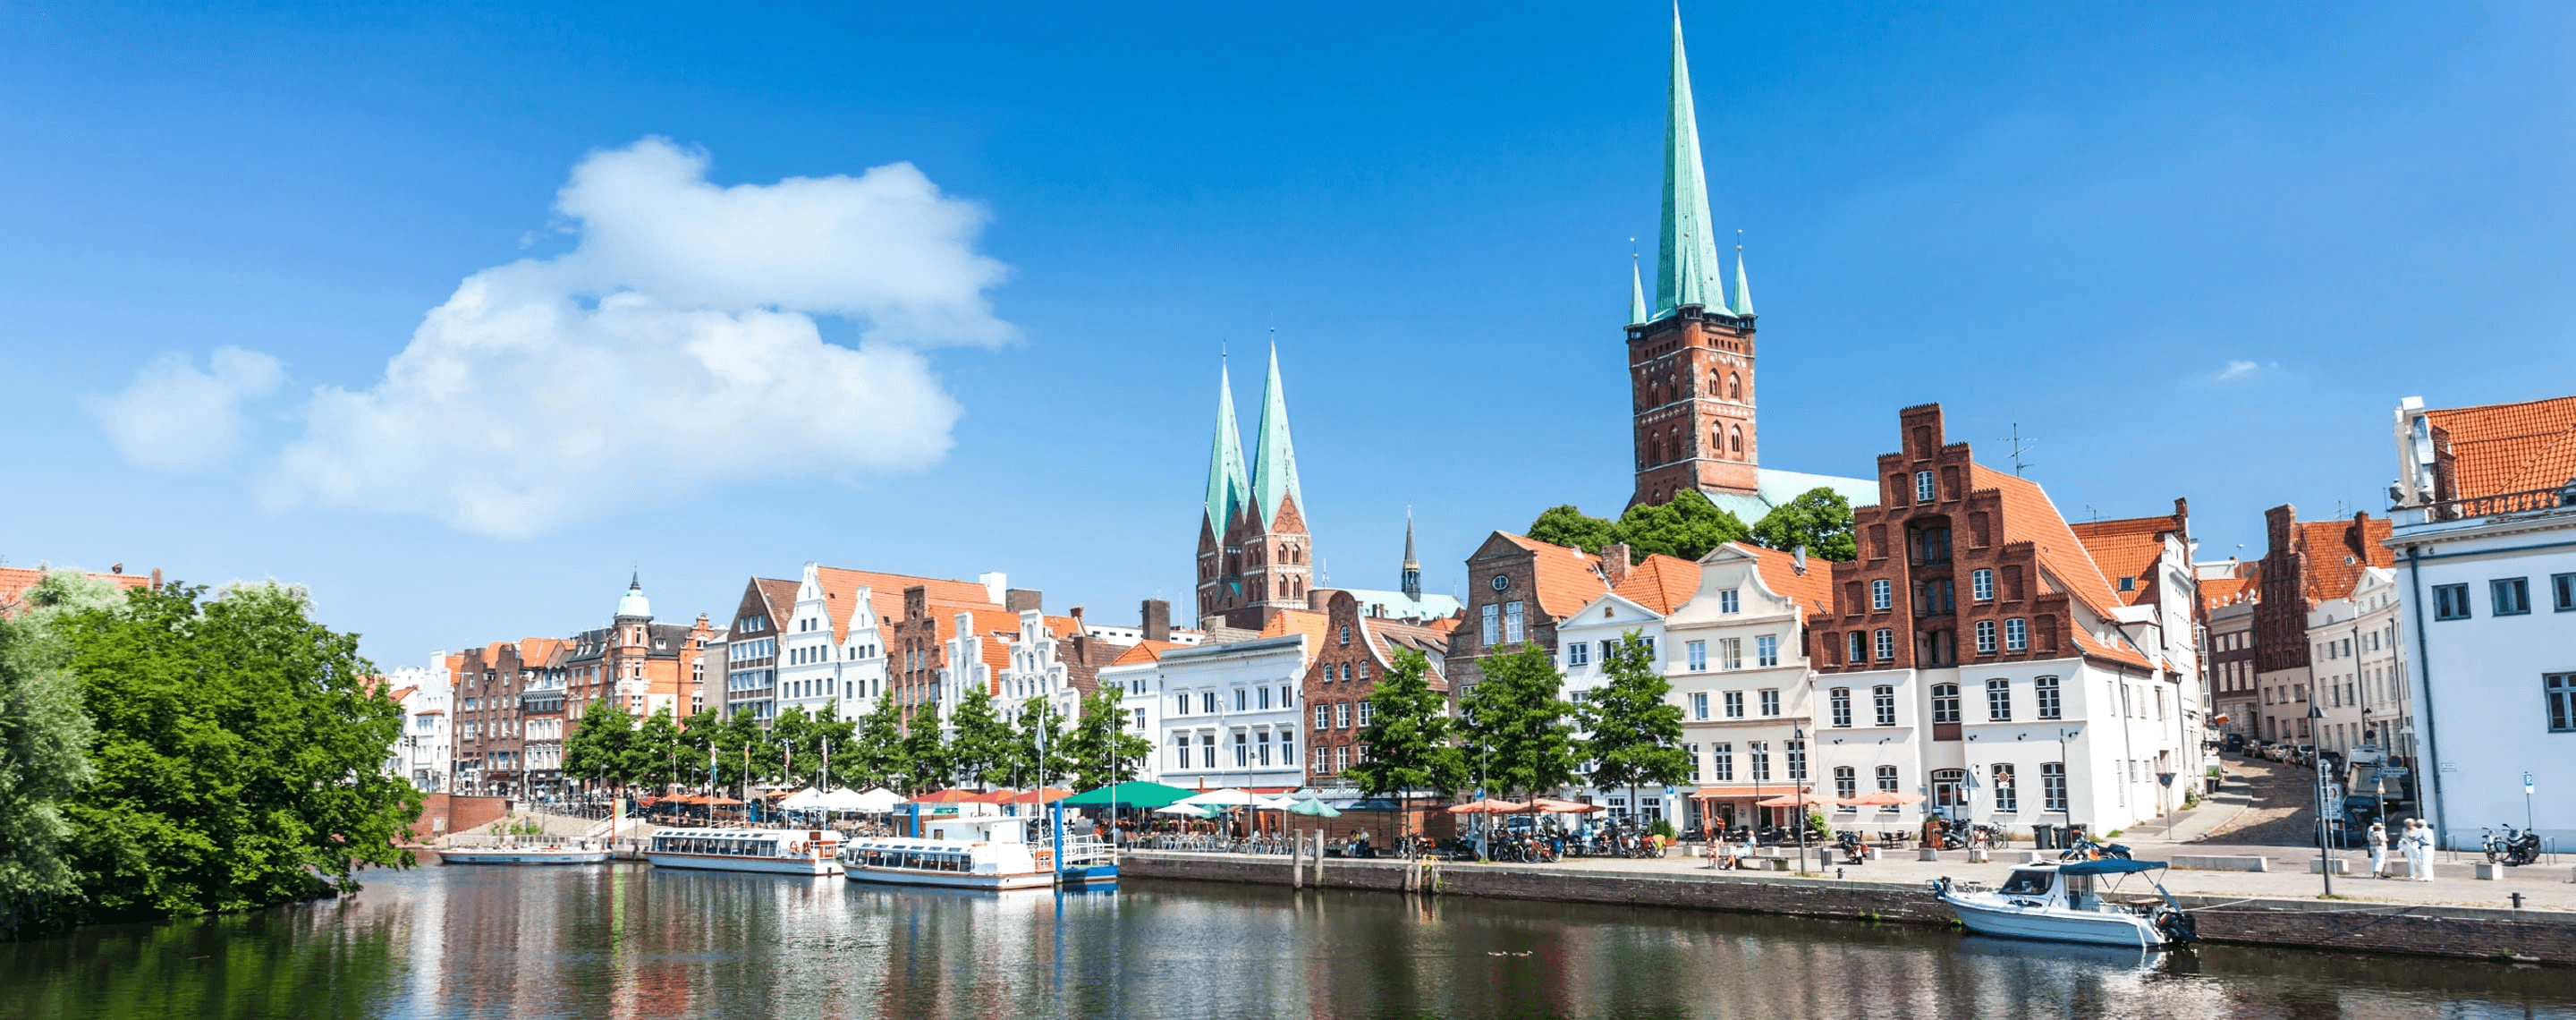 Sicht auf die Altstadt von Lübeck